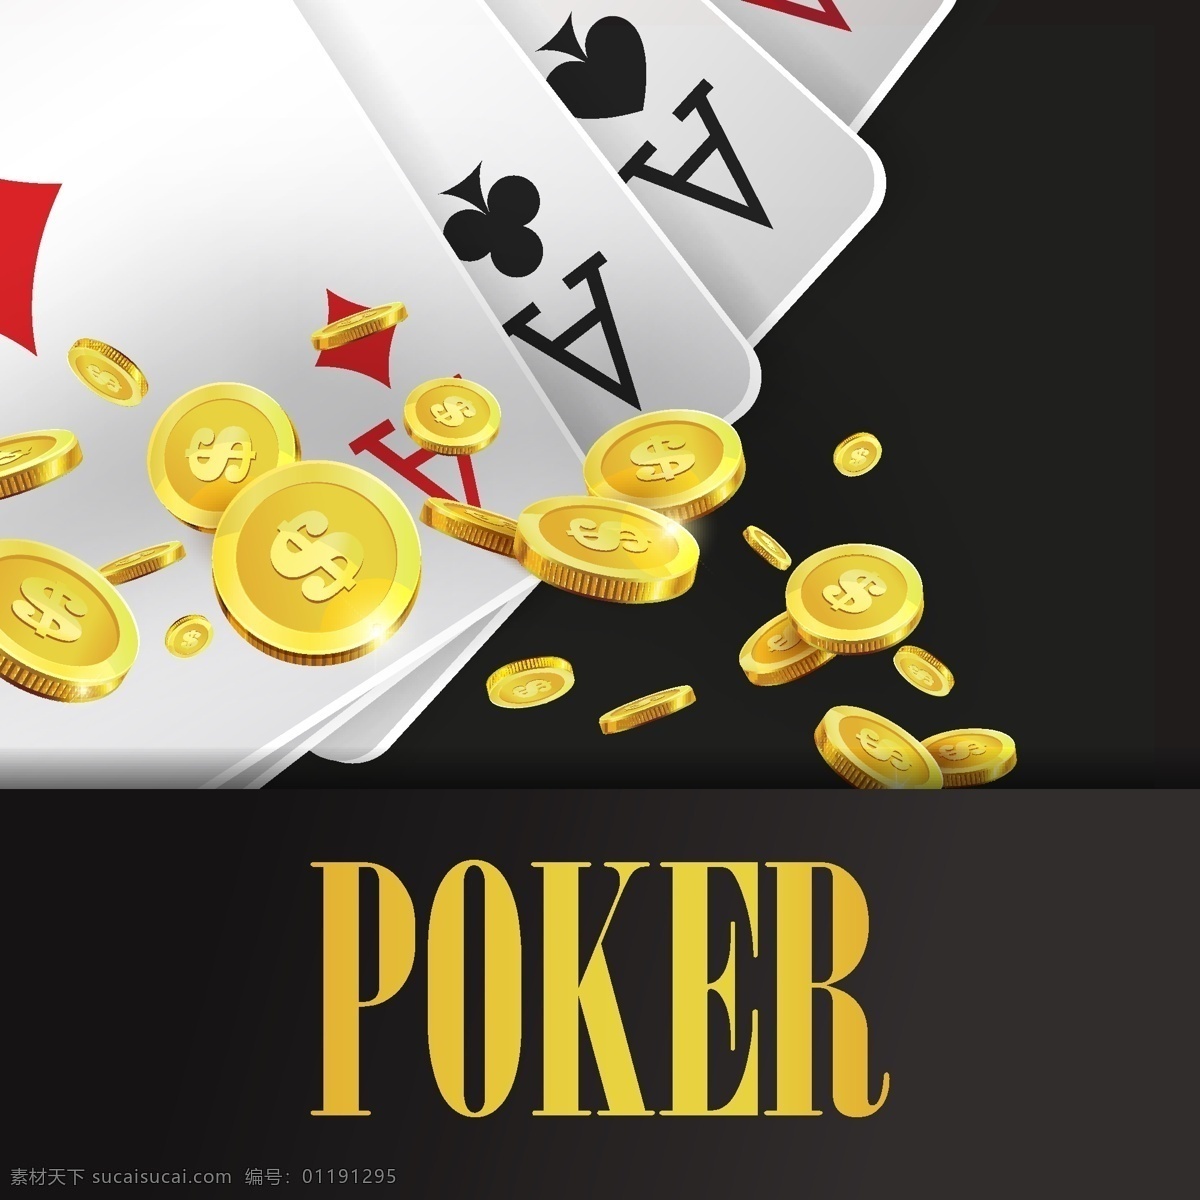 手绘 赌场 金币 筹码 卡通 矢量 背景 名称 扑克牌 金钱 神秘 矢量素材 背景素材 平面素材